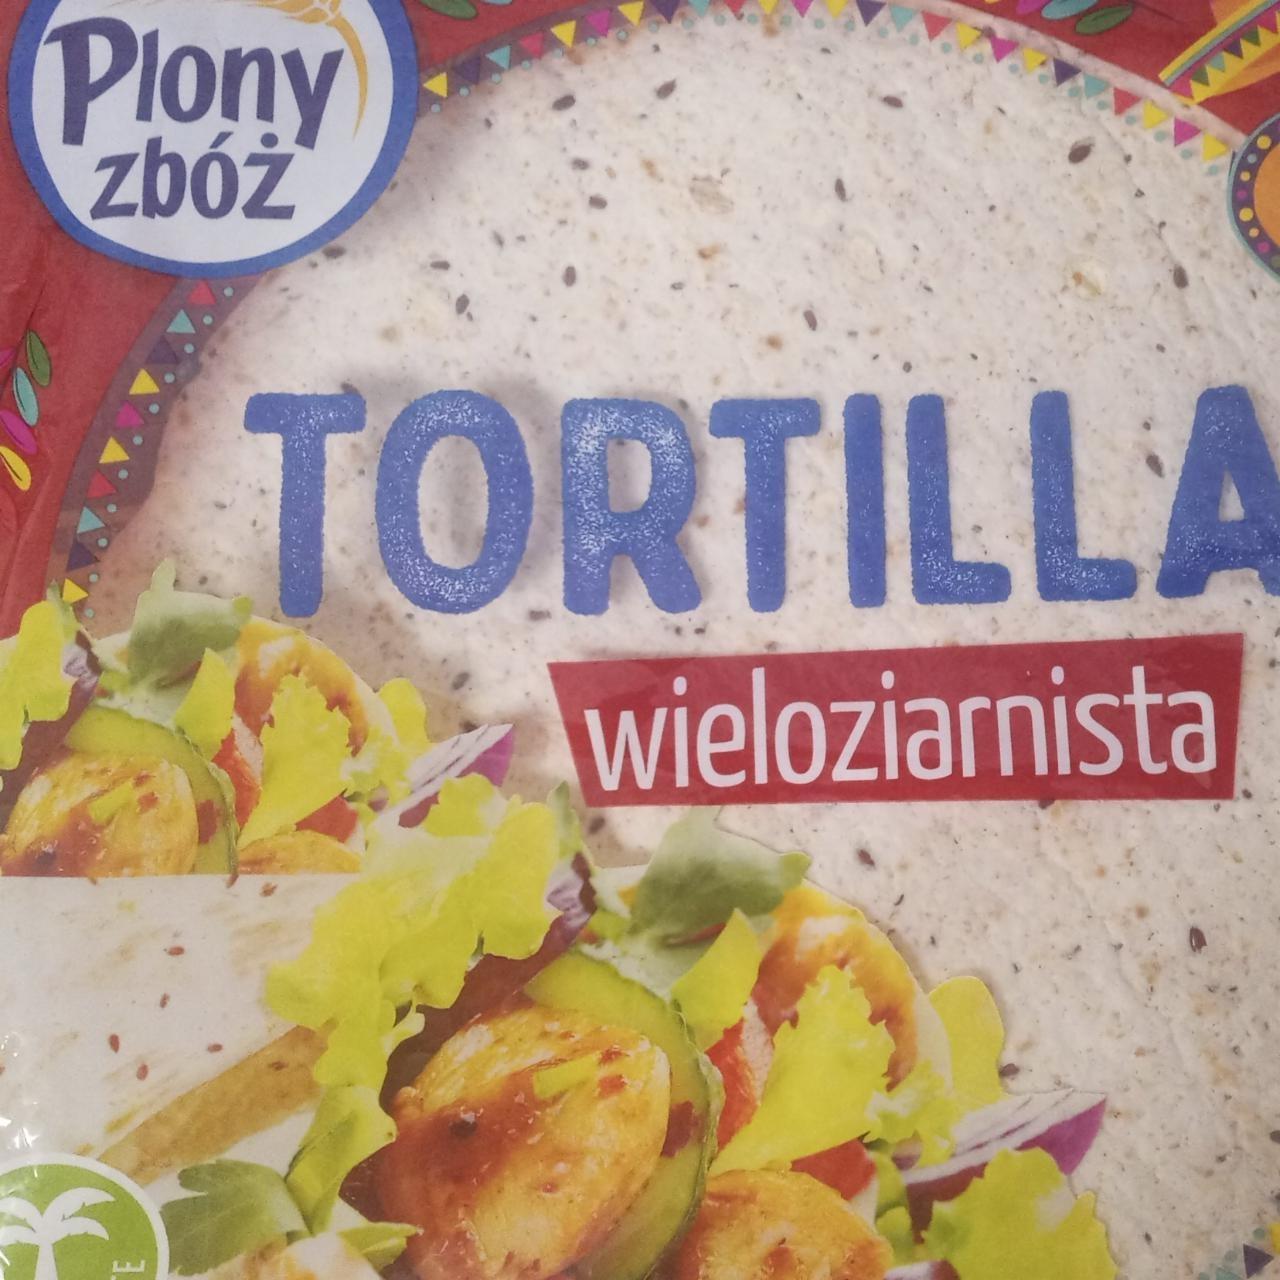 Zdjęcia - tortilla wieloziarnista plony zbóż